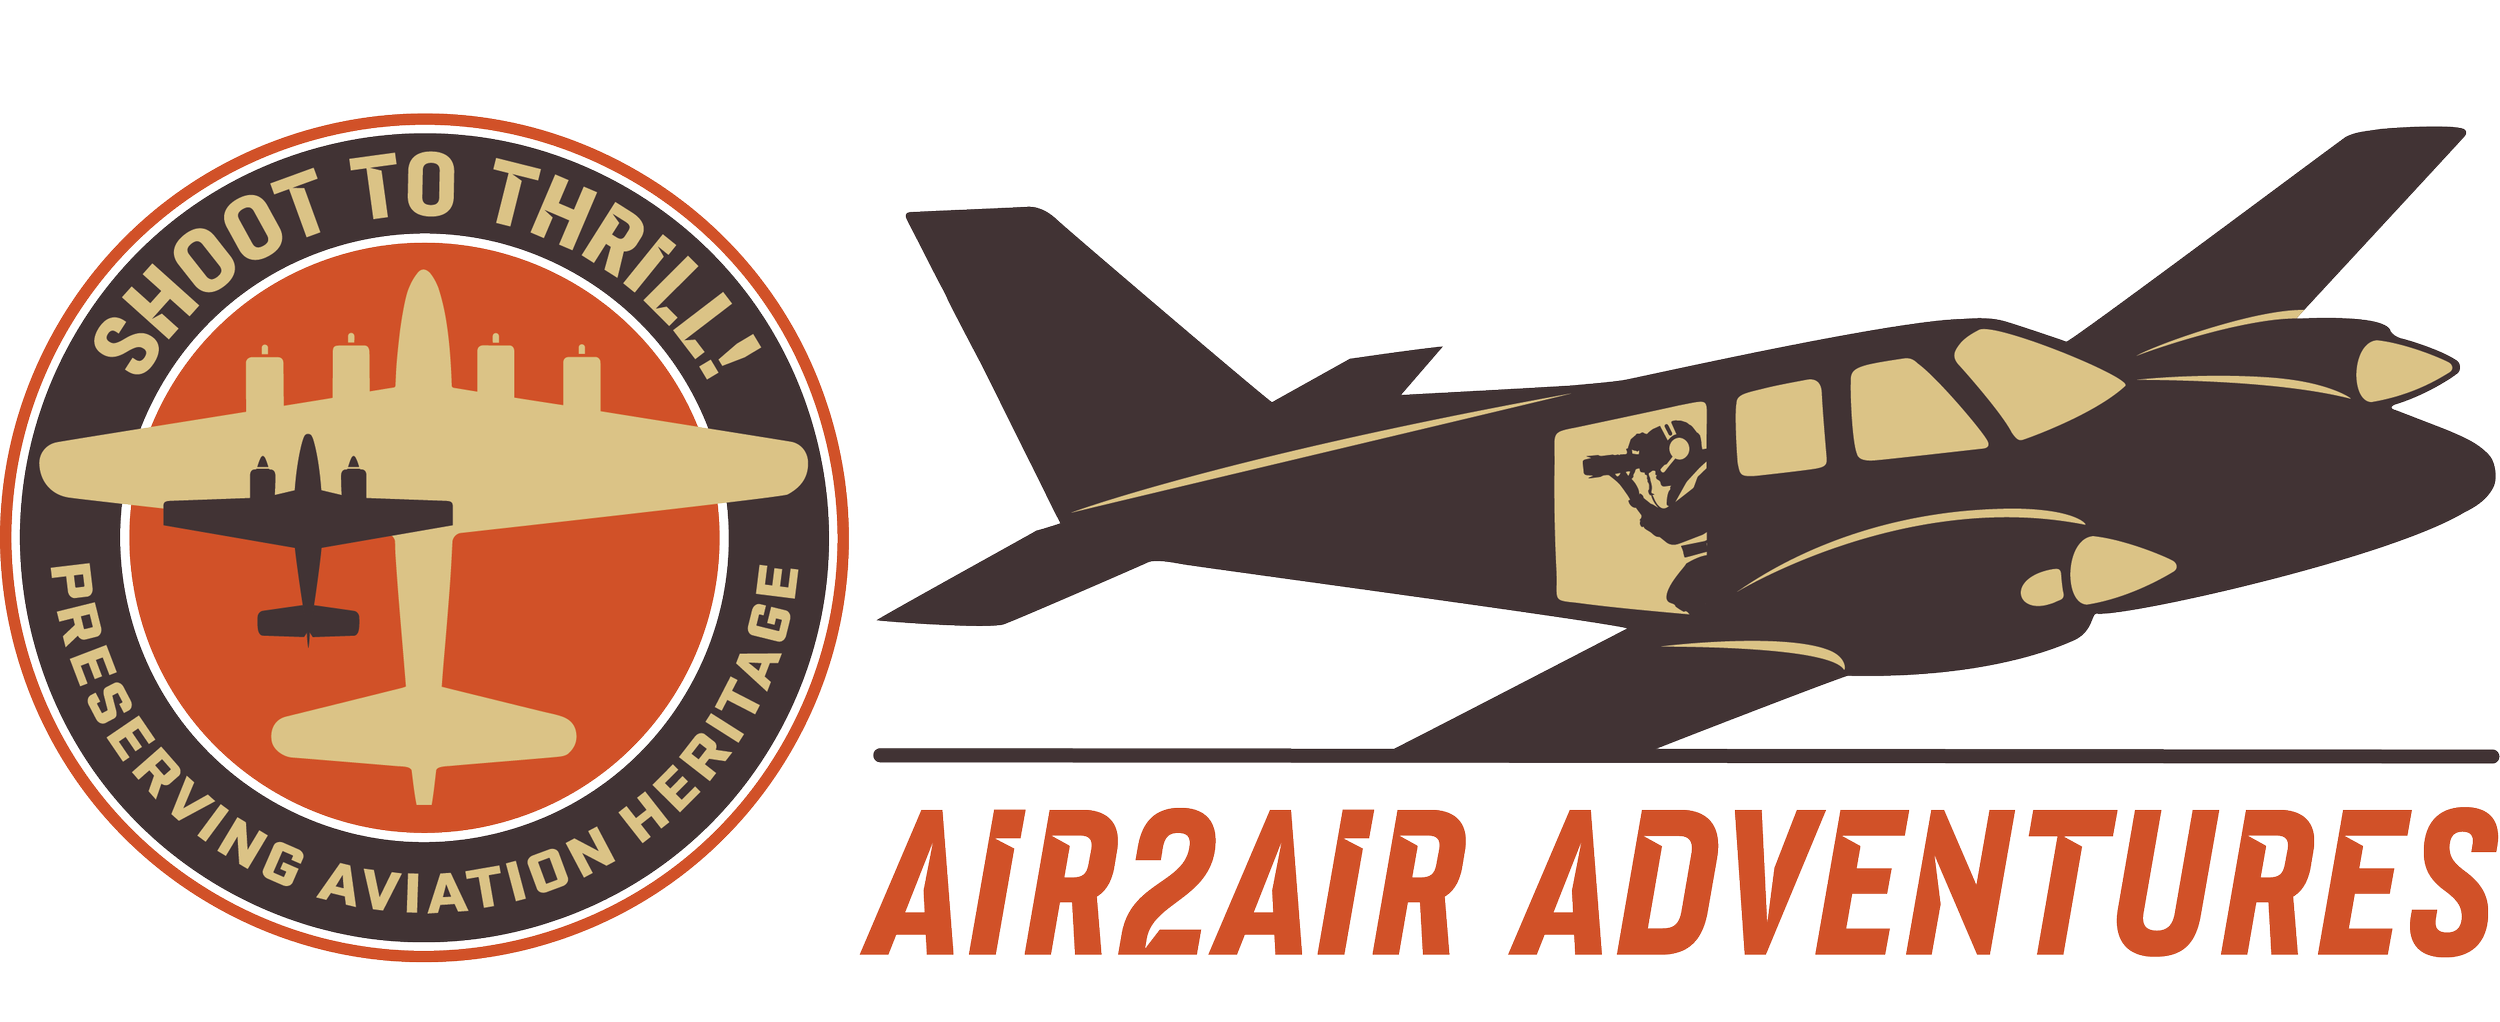 Air to Air Adventures